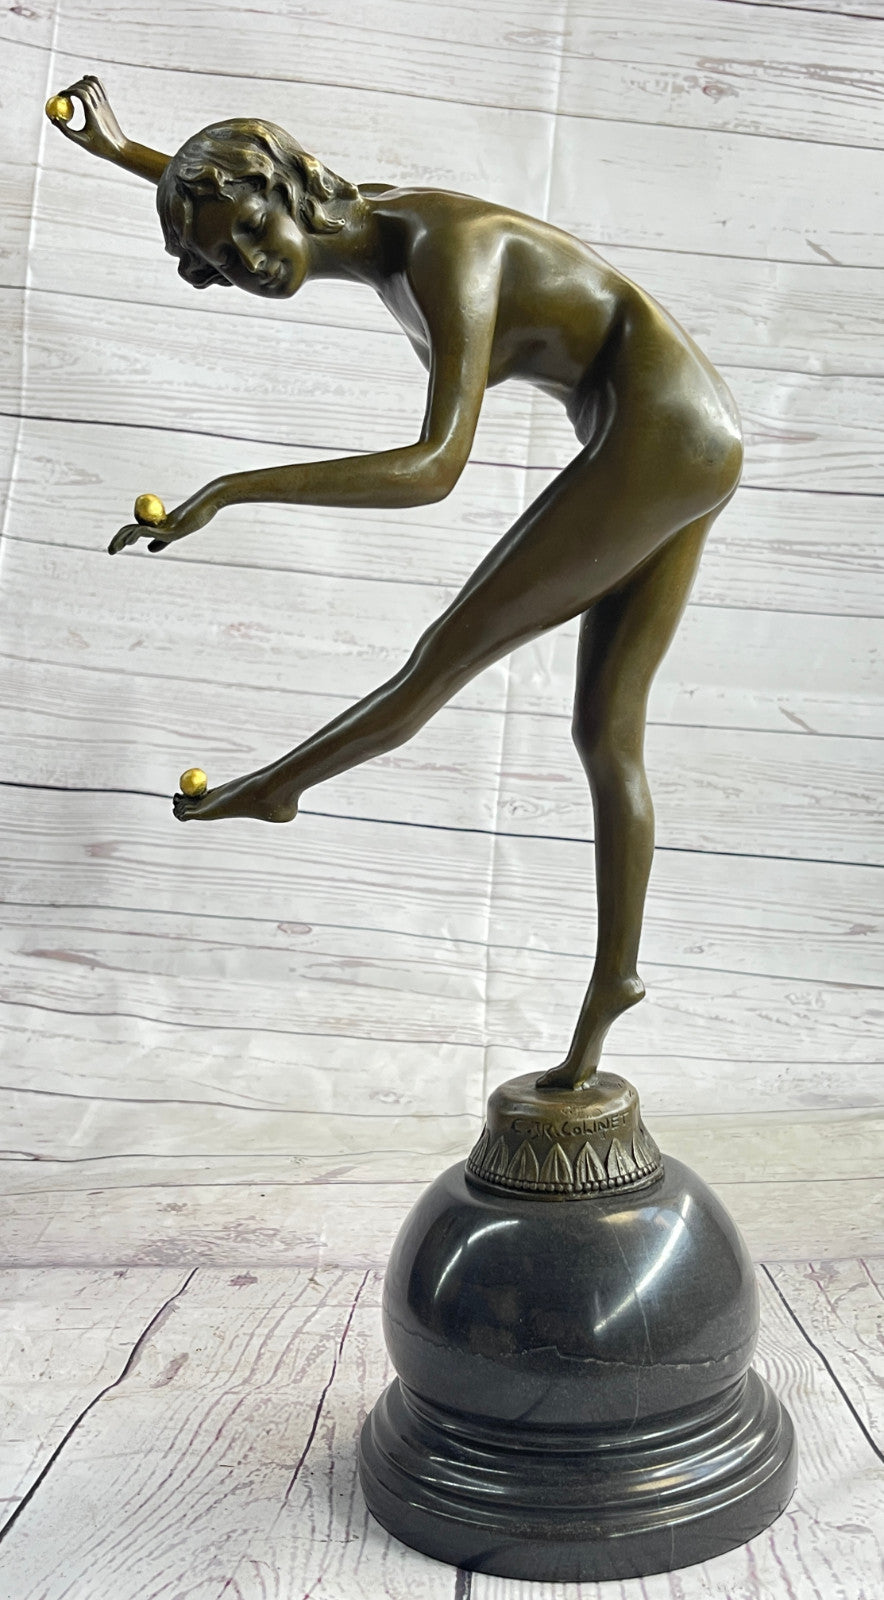 Claire Colinet`s Art Nouveau "The Juggler" Bronze Sculpture: Handcrafted Artwork